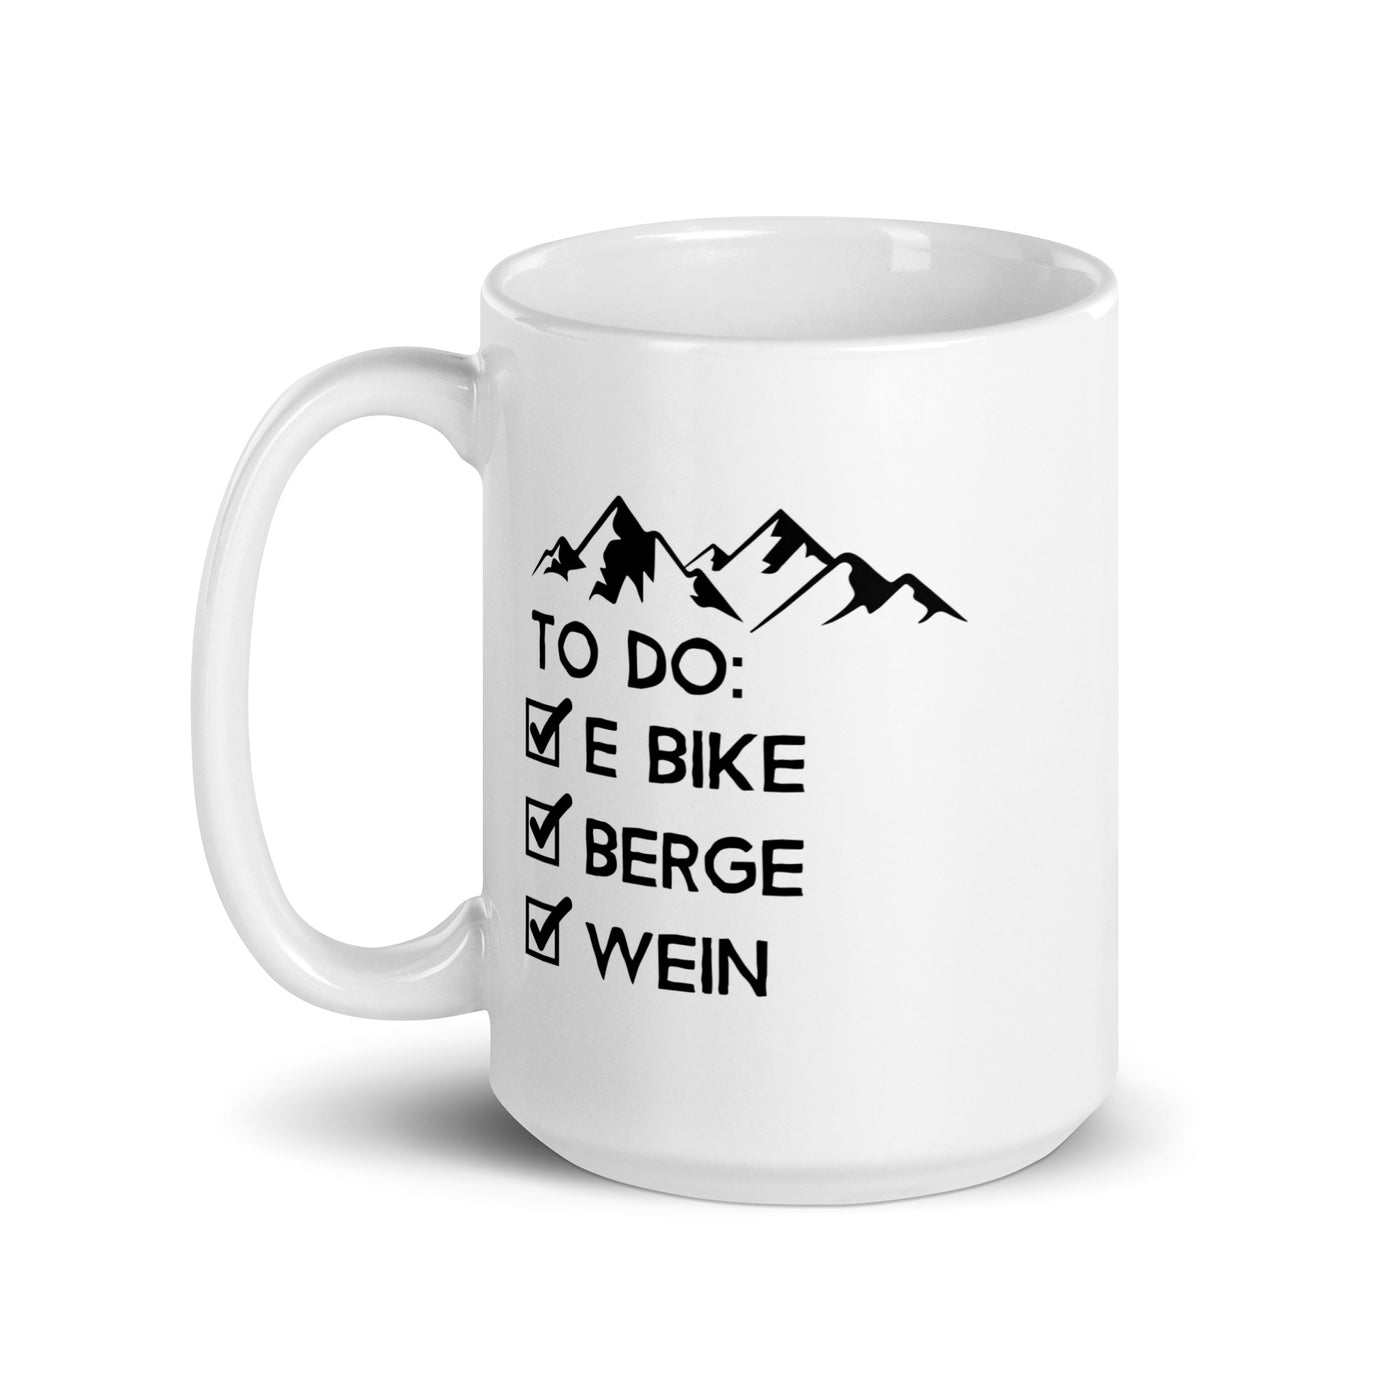 To Do Liste - E-Bike, Berge, Wein - Tasse e-bike